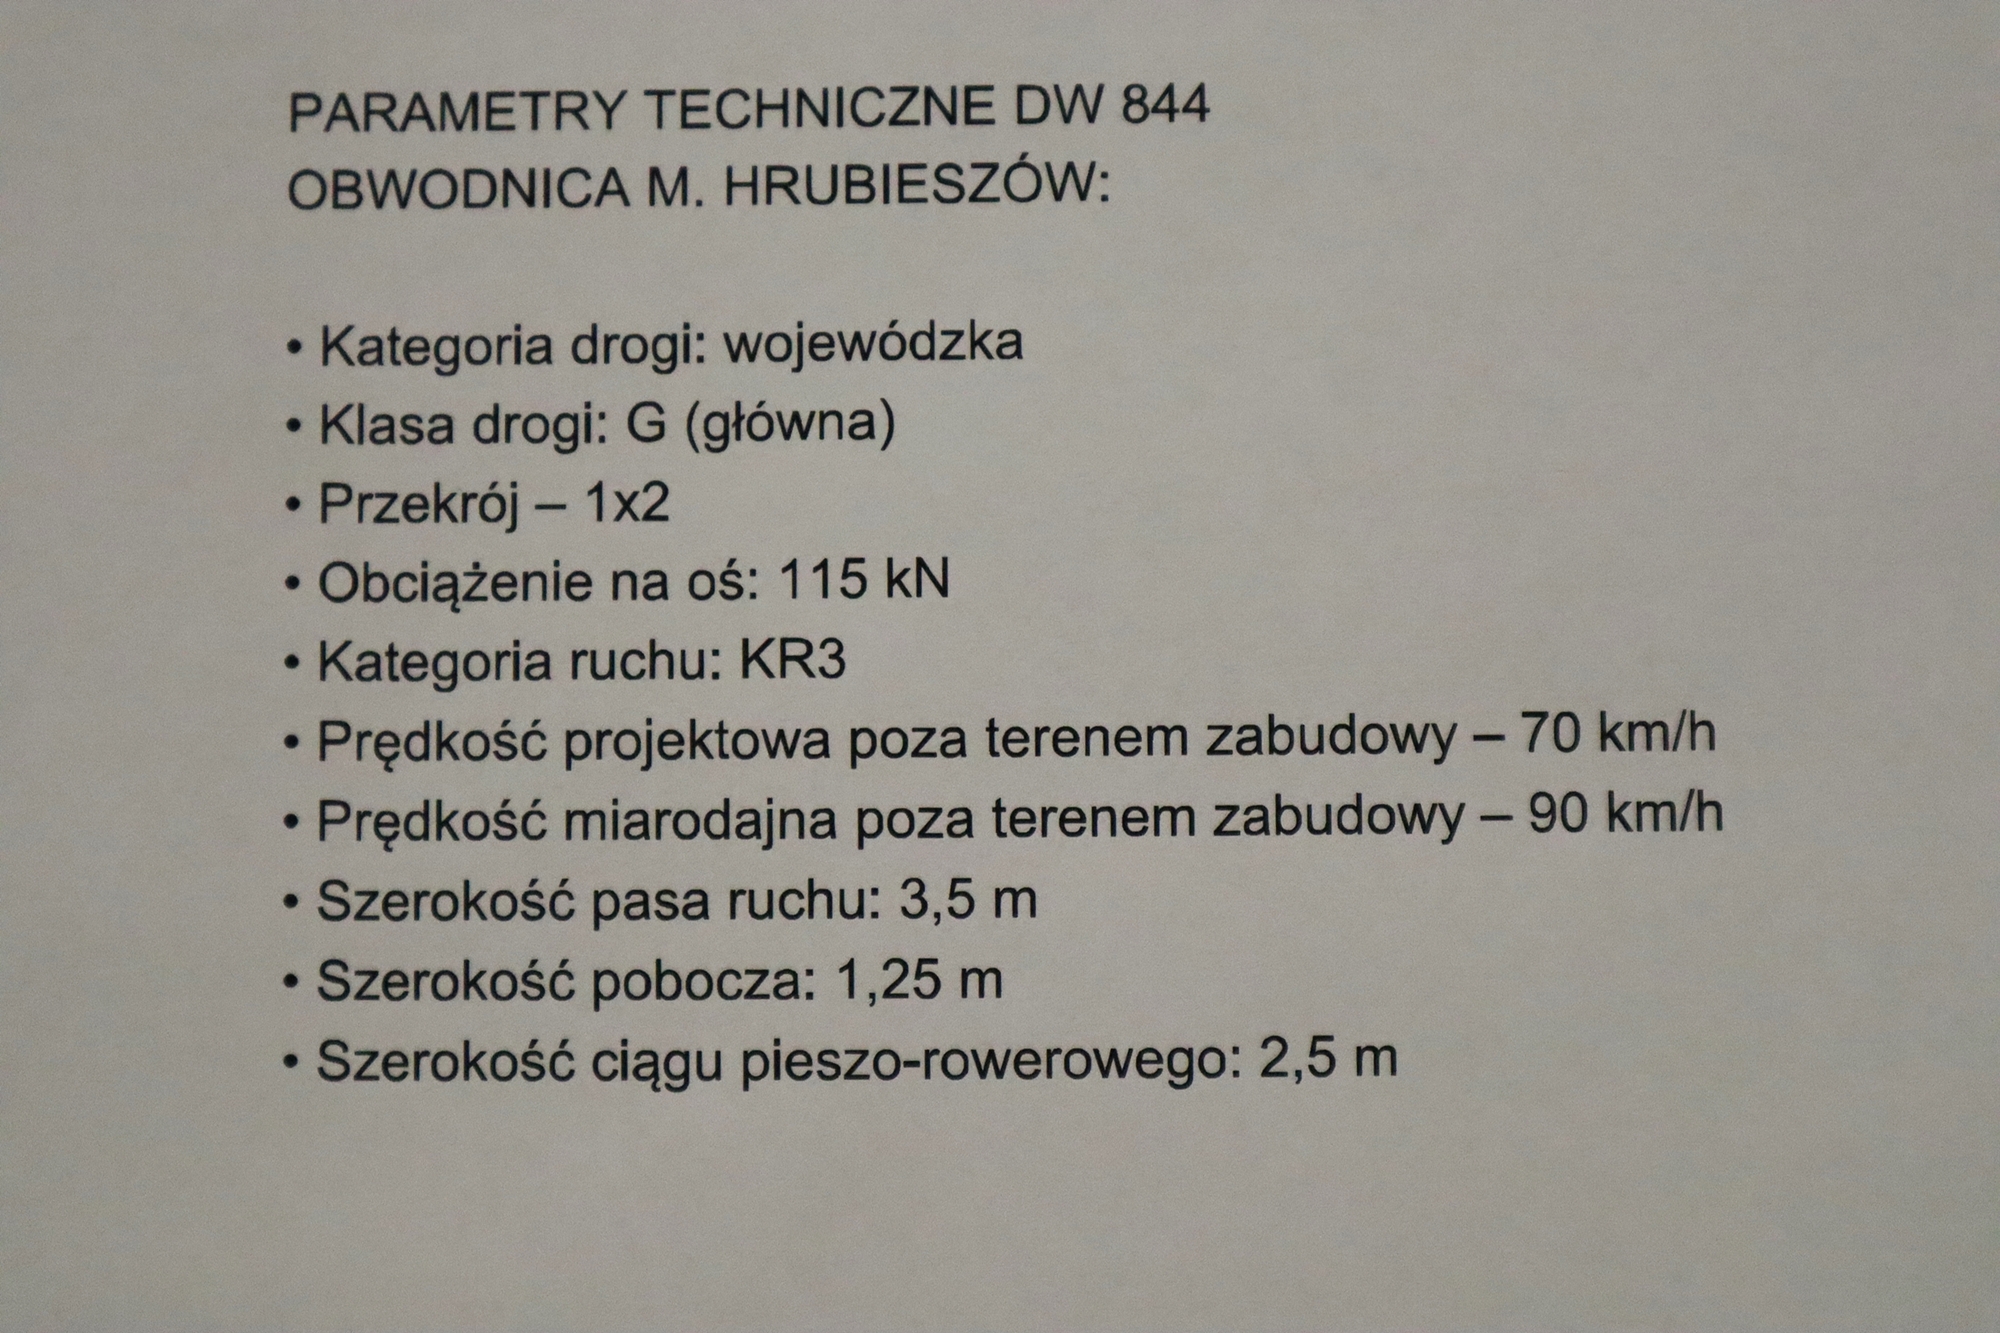 Na zdjęciu widzimy opis parametrów technicznych nowej obwodnicy Hrubieszowa w ciągu drogi wojewódzkiej numer 844